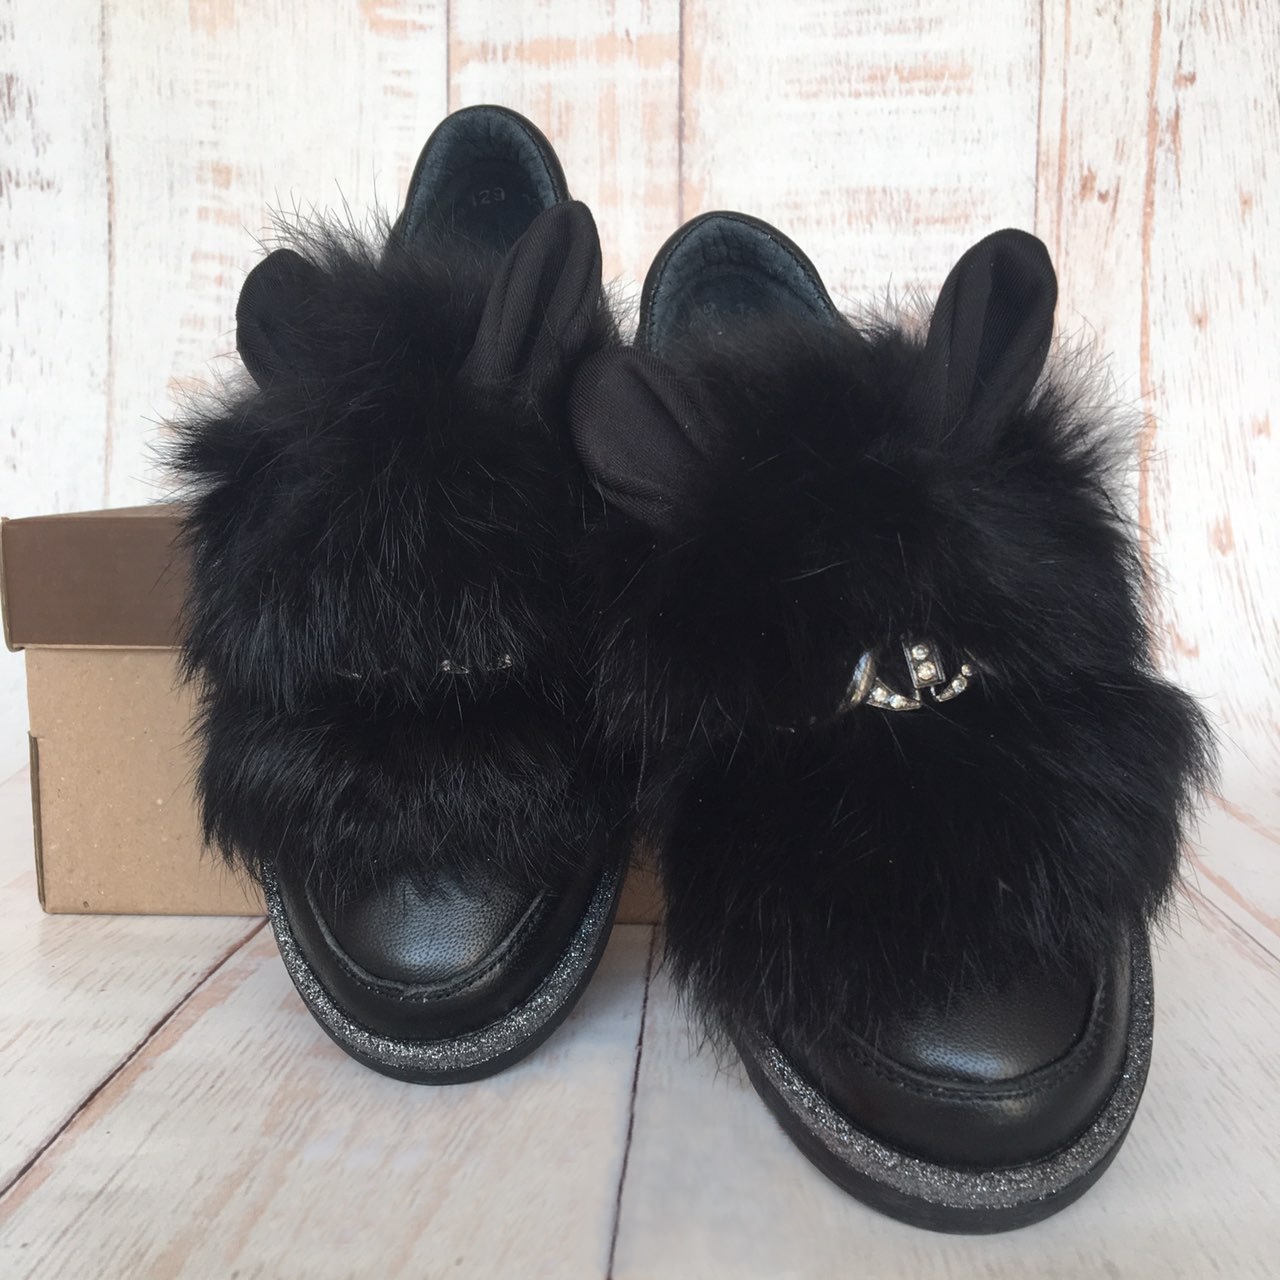 Дитячі туфлі для дівчинки, чорні (88129/19/194), Bistfor